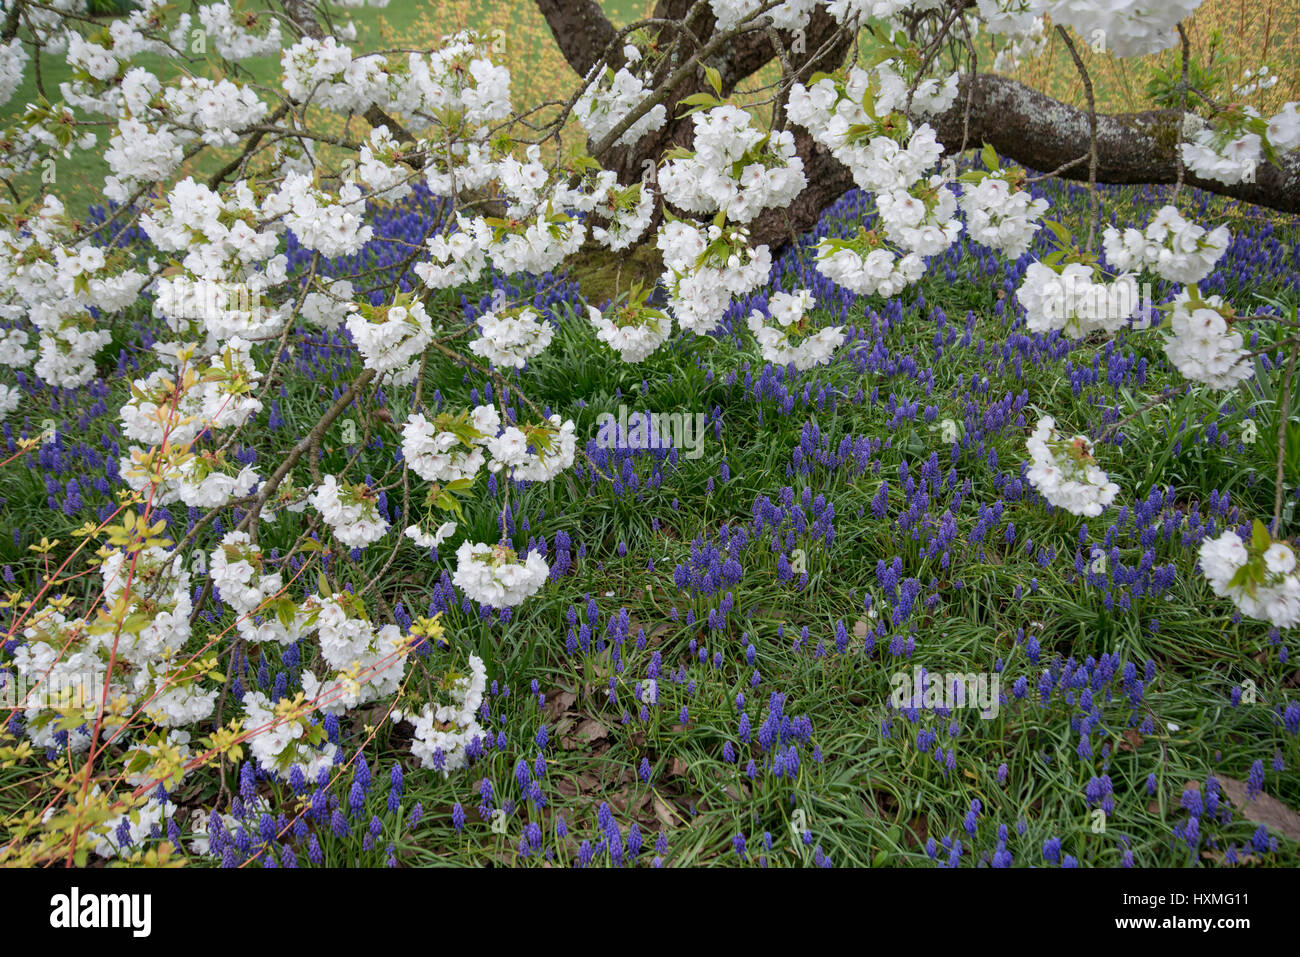 Grape hyacinth {Muscari armeniacum} flowering in garden under Japanese flowering cherry tree (Prunus shirotae) UK Stock Photo